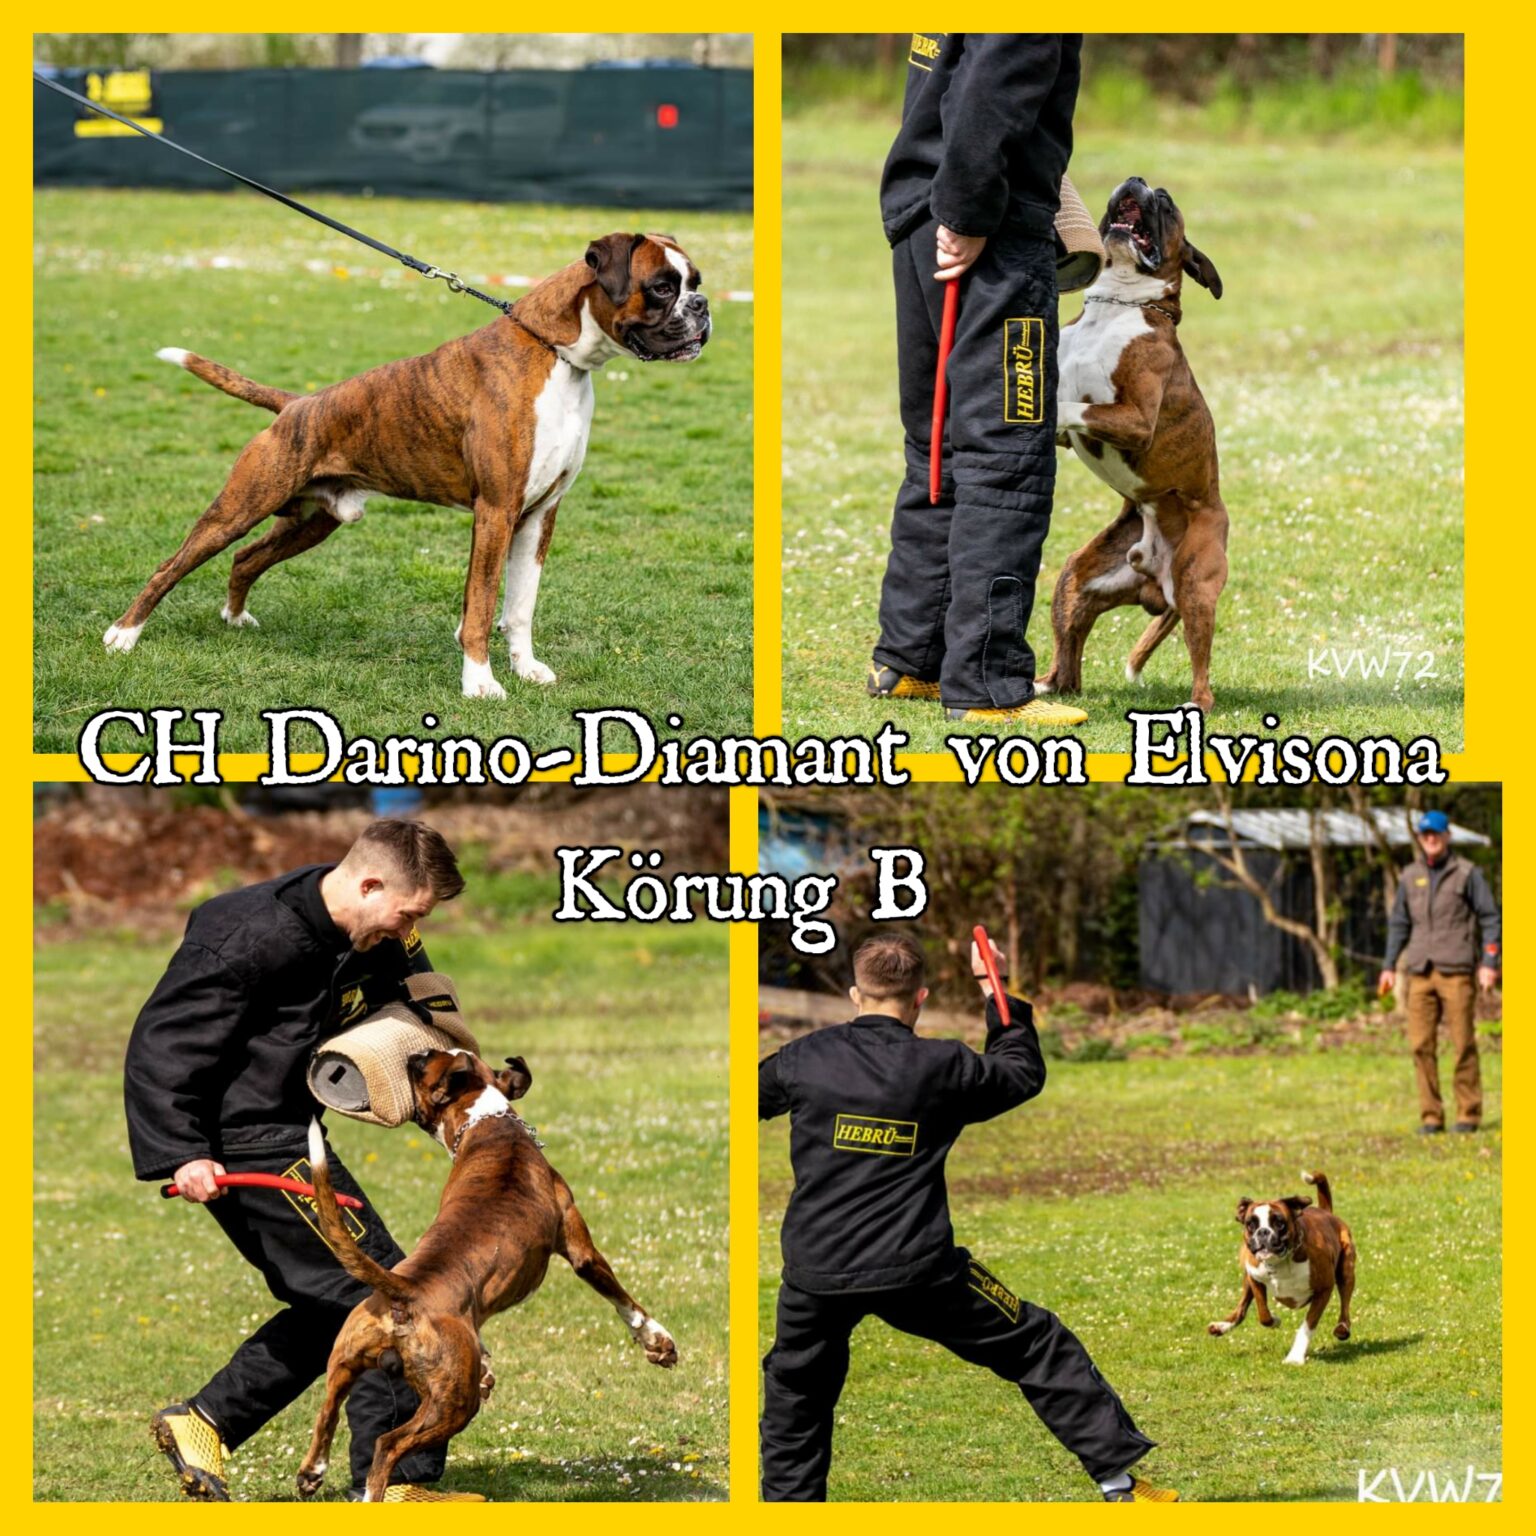 Darino - Diamant von Elvisona Körung B Deutschland 21.04.2022